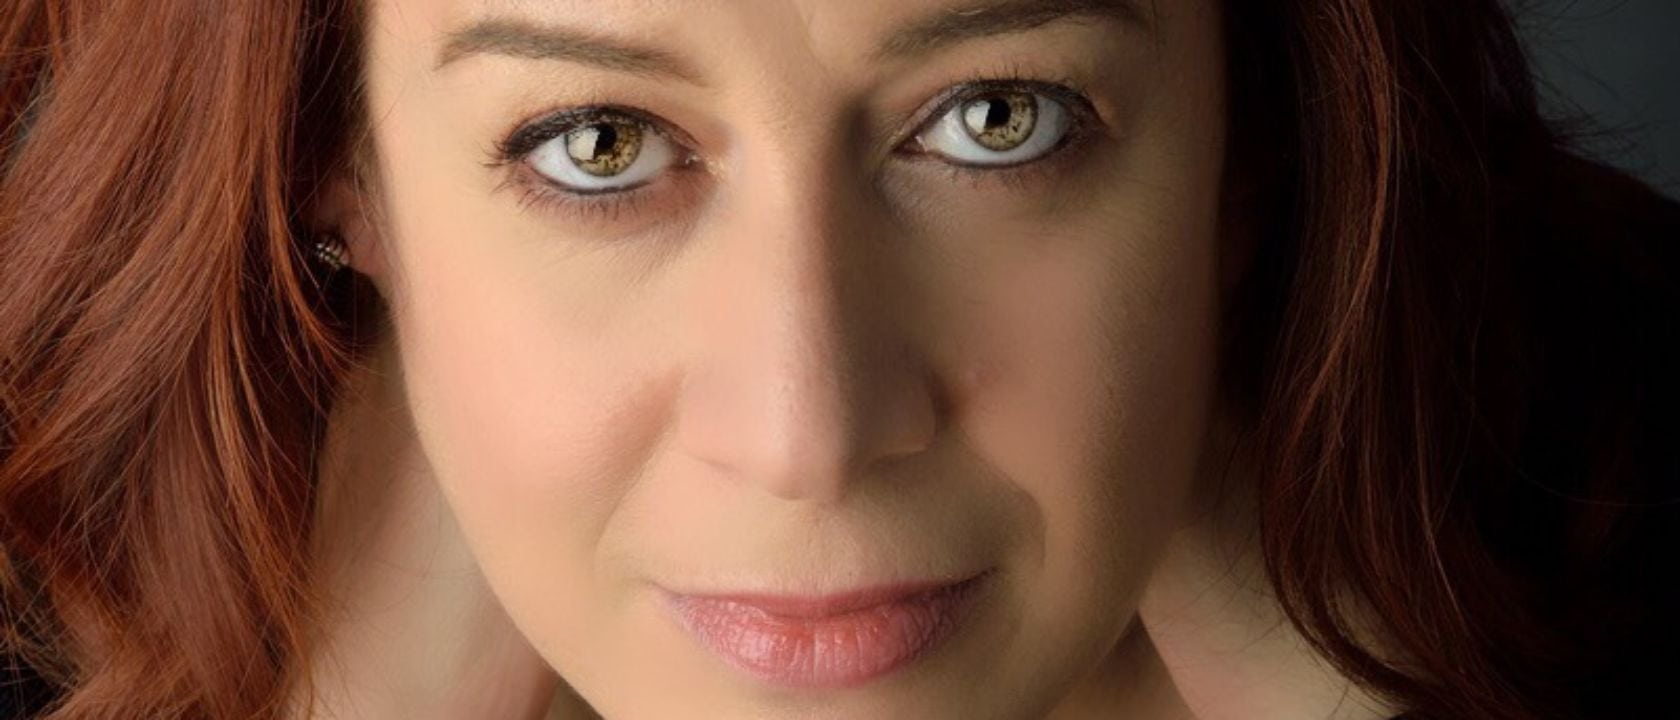 mezzo-soprano Anna Maria Chiuri